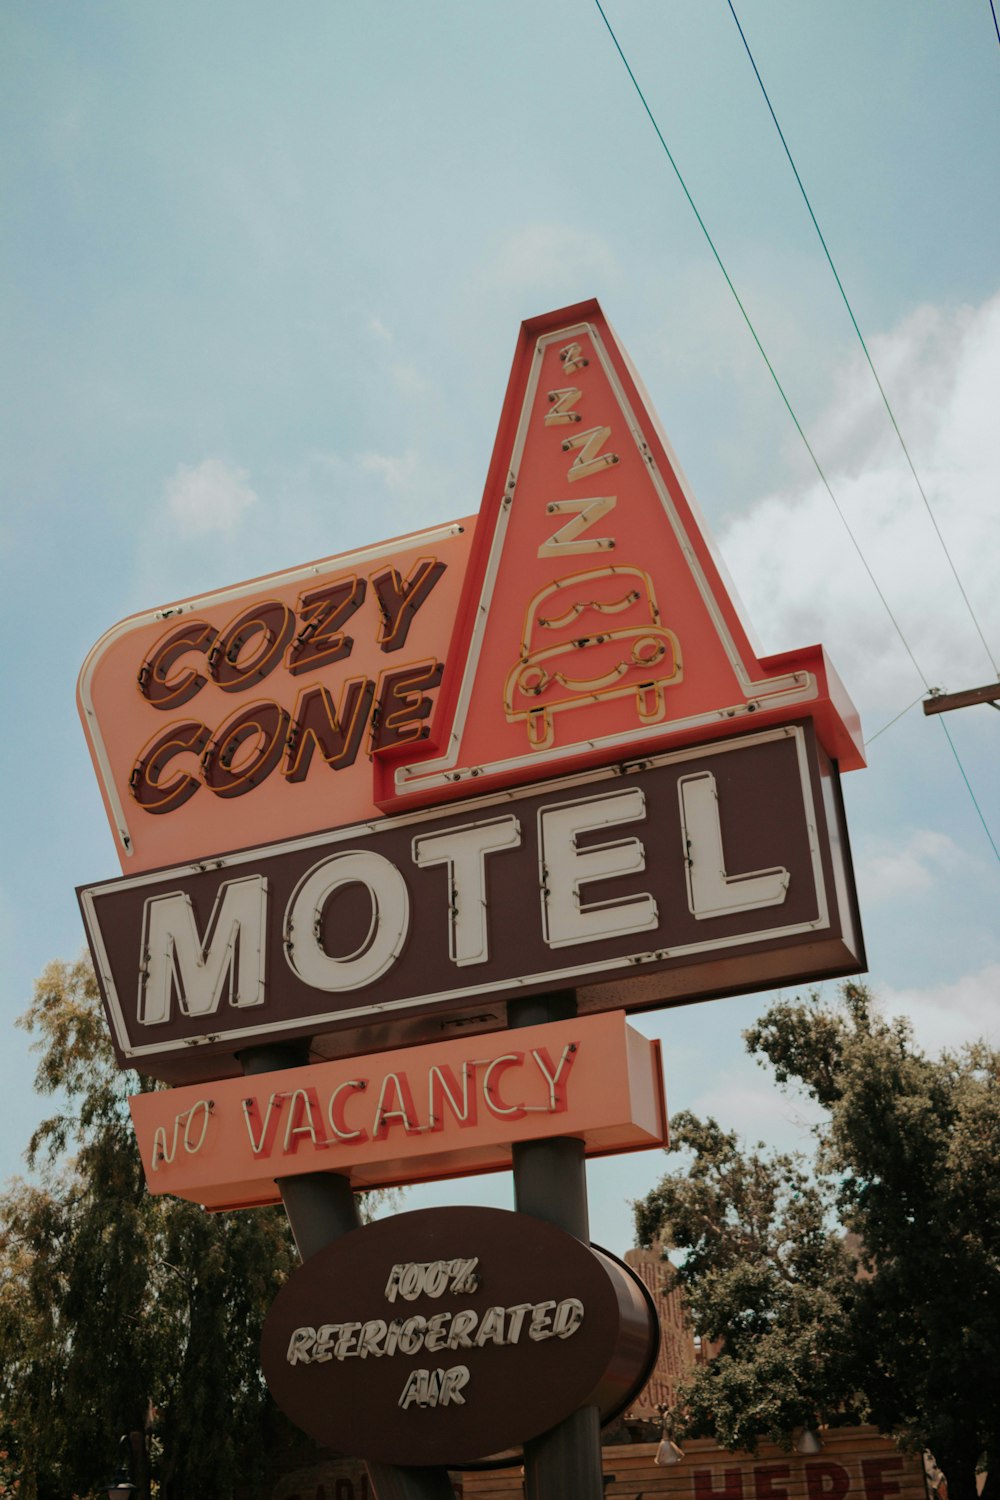 コージー コーン モーテルの道路標識